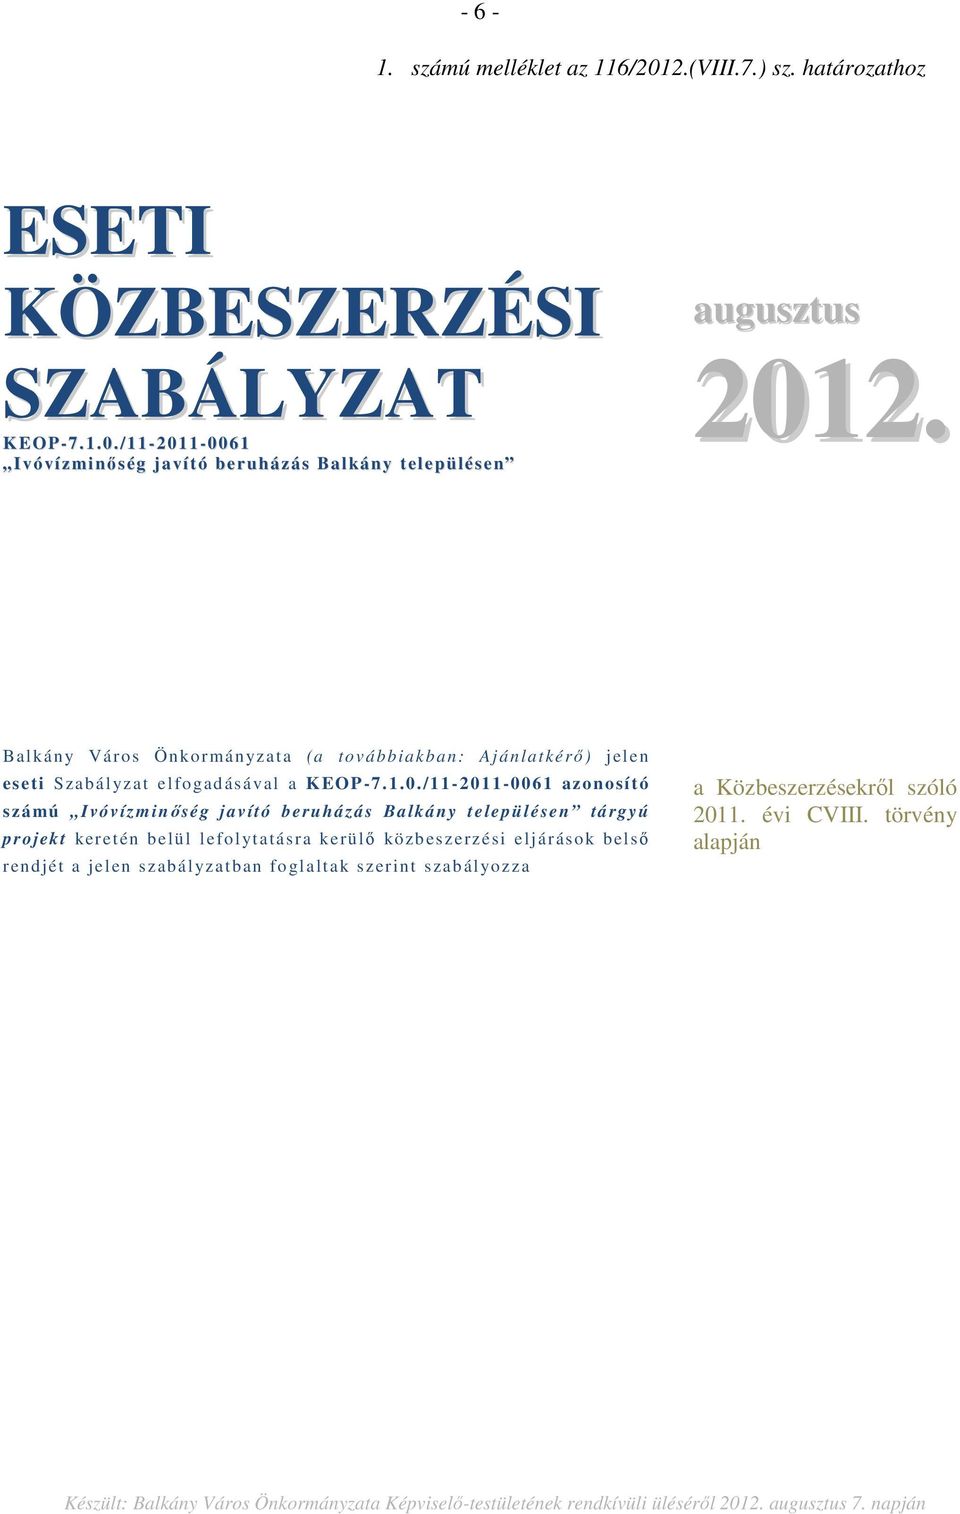 /11-2011-0061 azonosít ó számú Ivóvízm inőség ja vító beruházá s Balkány településen tá rgyú projekt keretén belül lefolytatásra kerülő közb